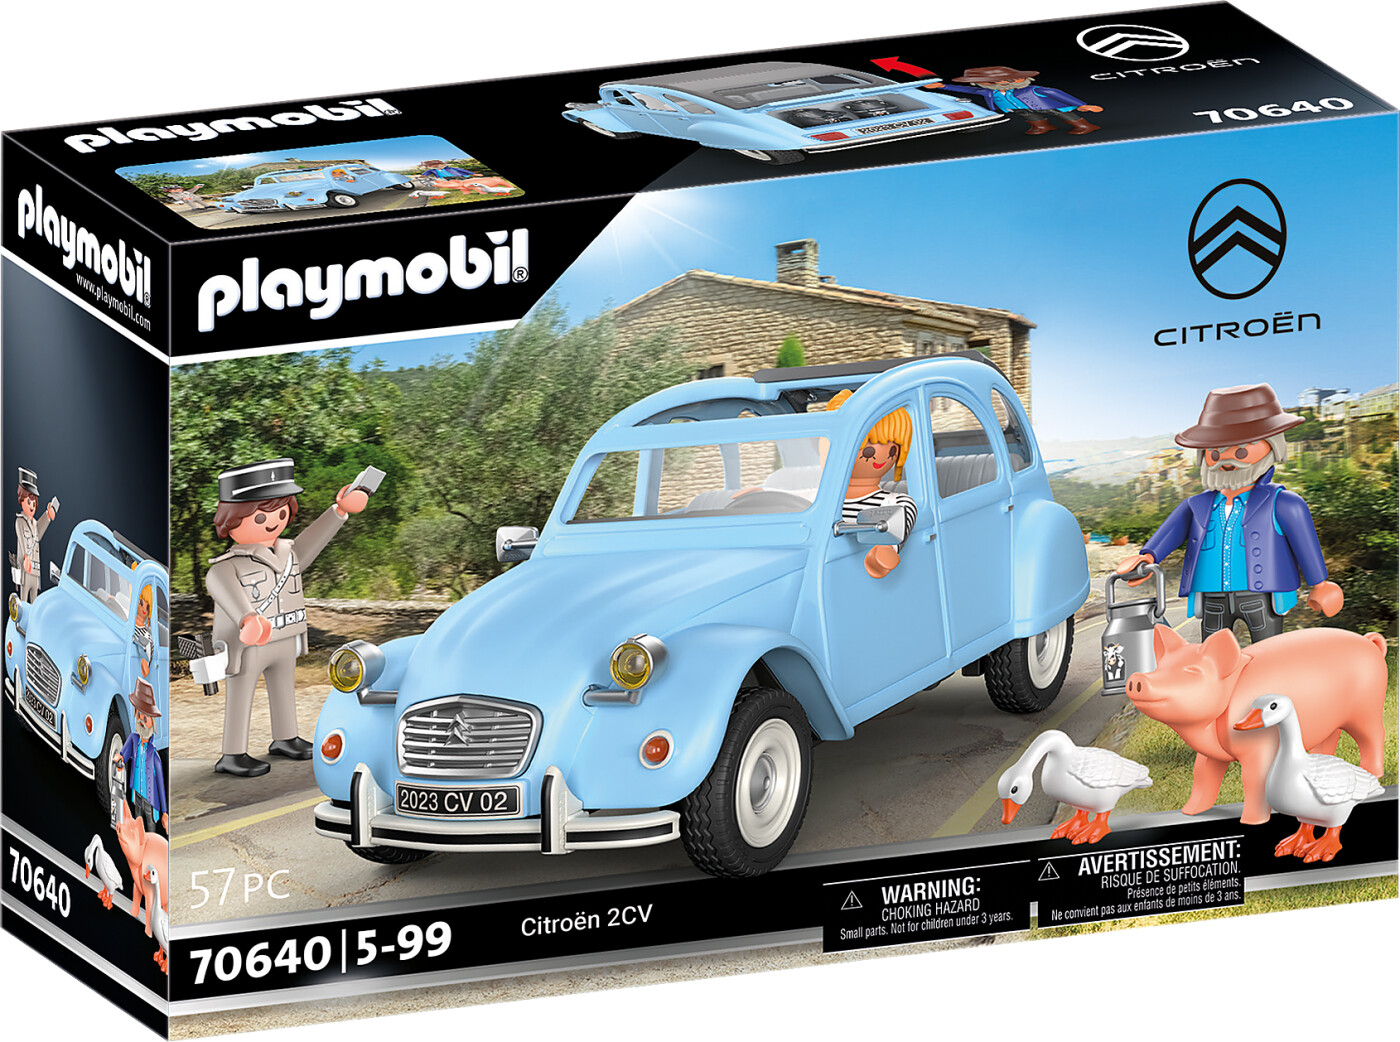 Billede af Playmobil - Citroën 2cv - 70640 hos Gucca.dk